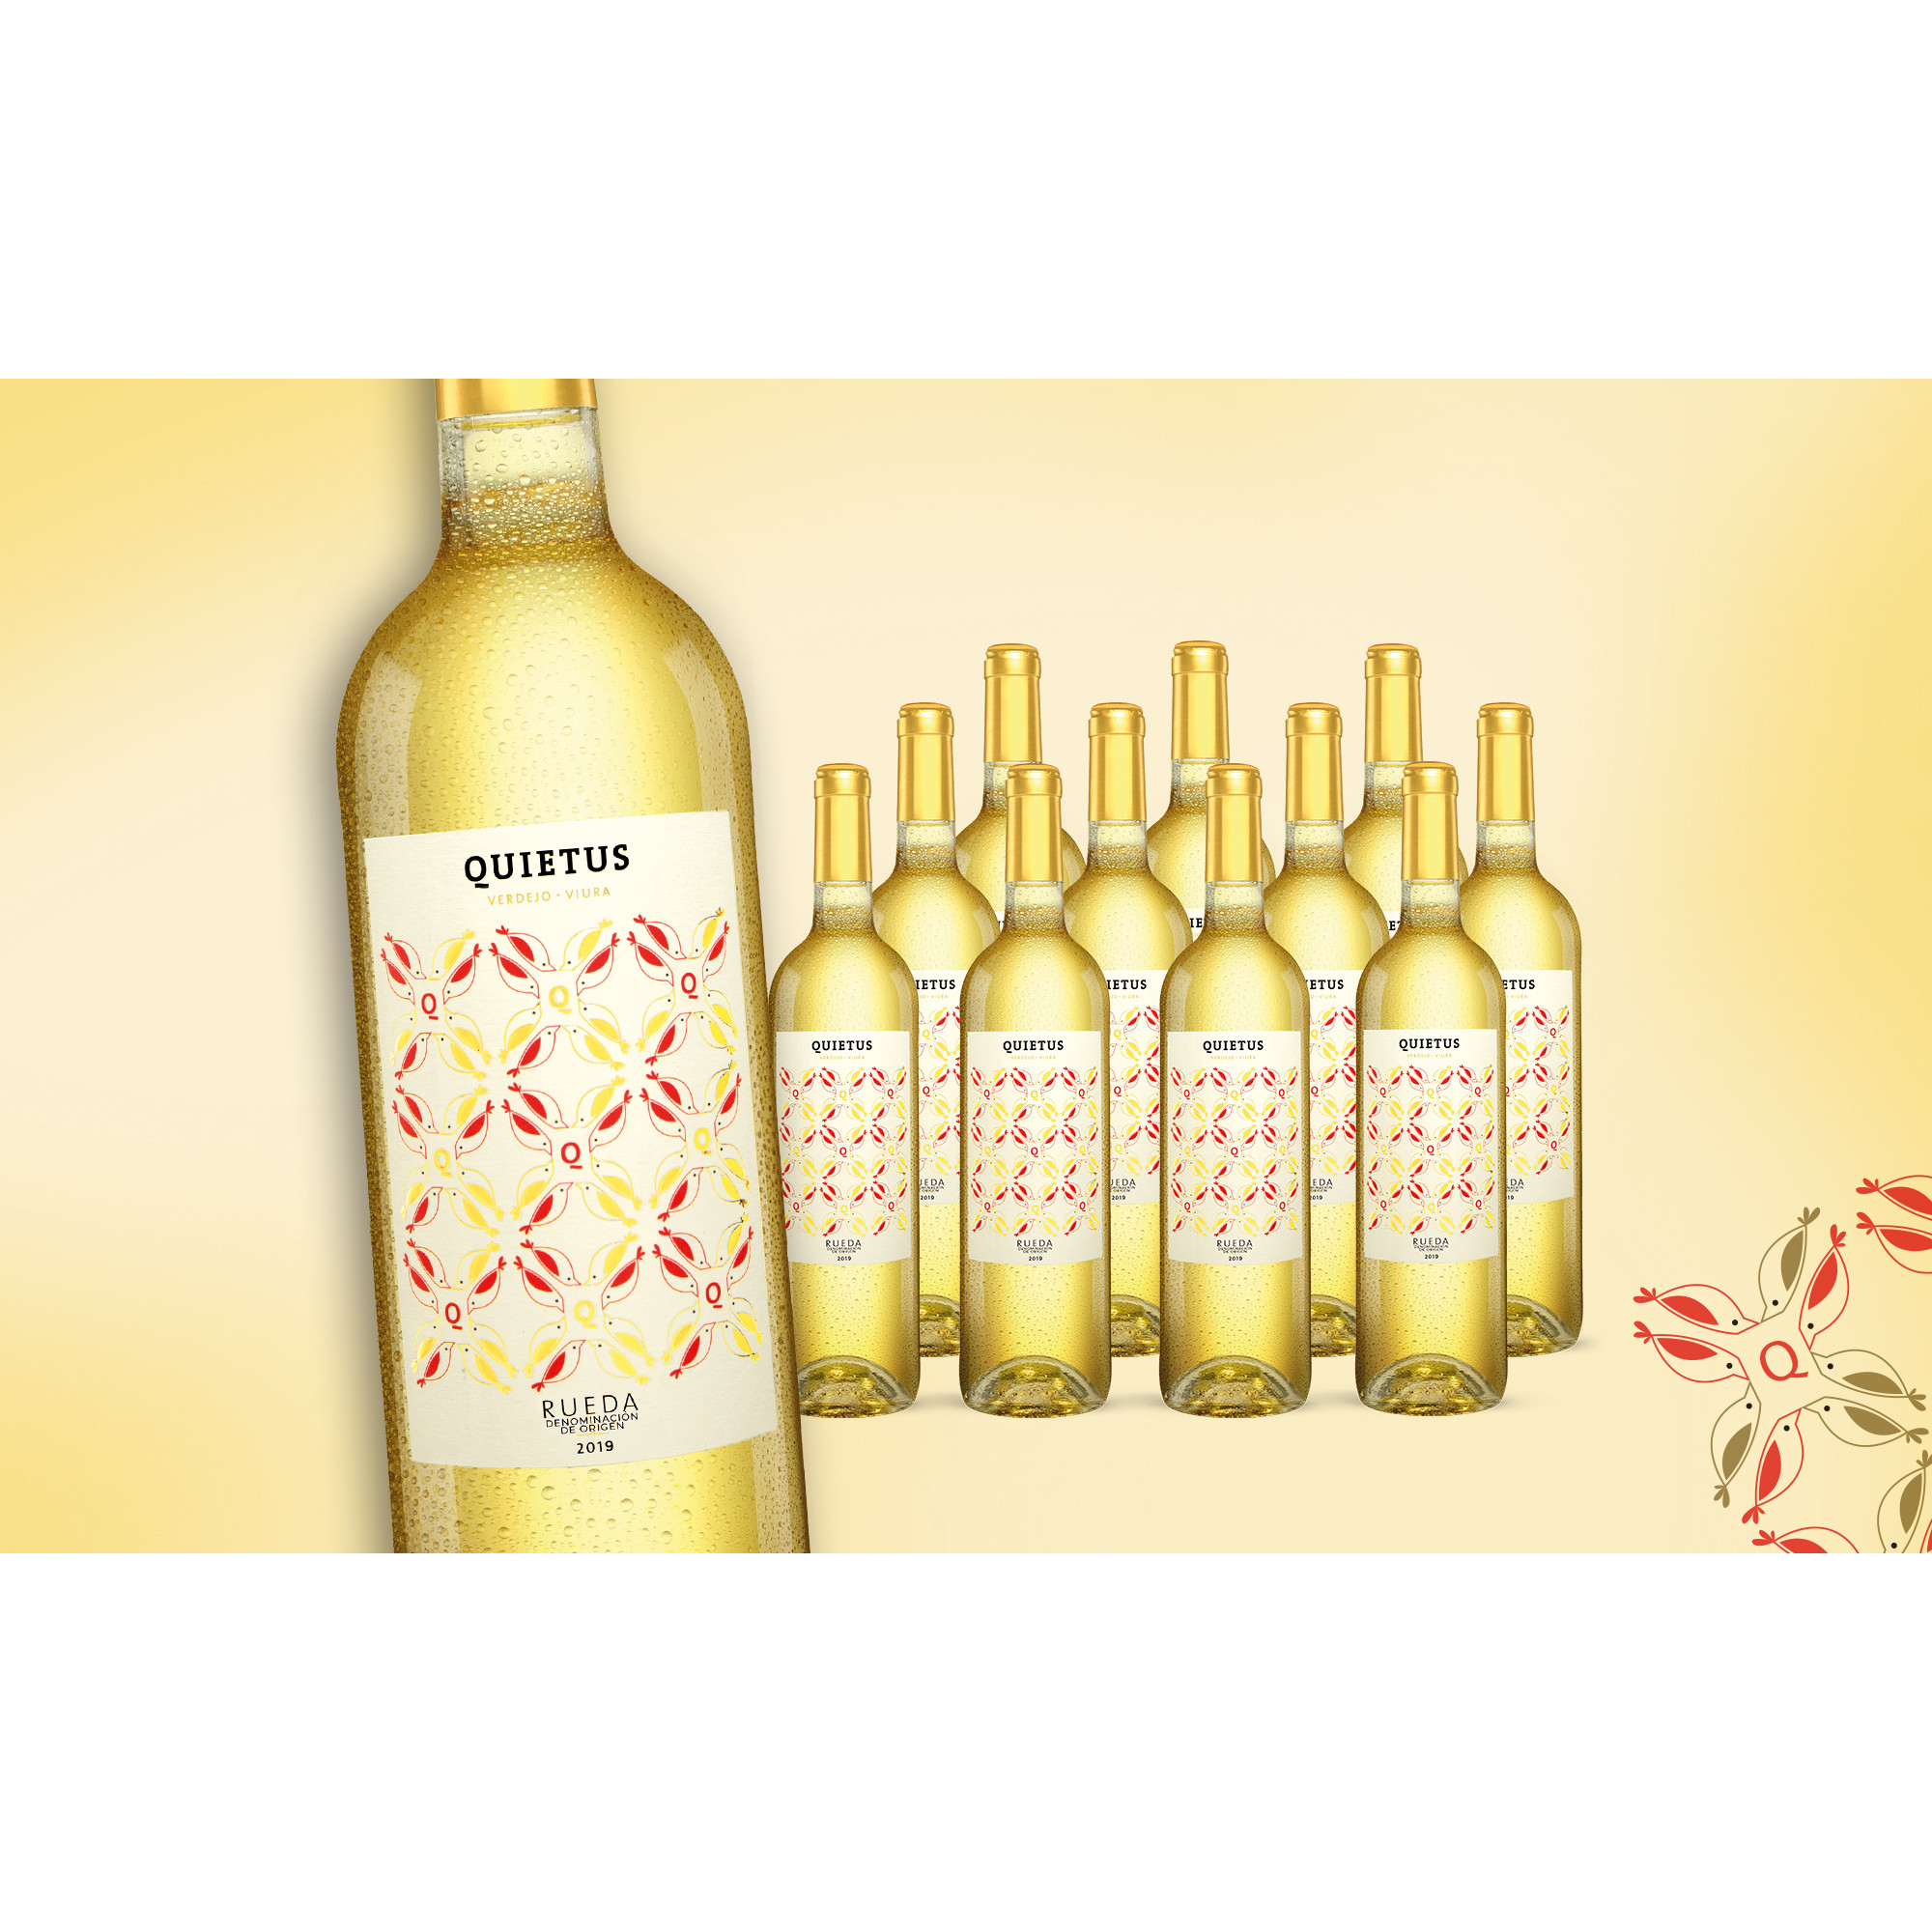 Quietus Rueda 2019  9L 12.5% Vol. Trocken Weinpaket aus Spanien 30586 vinos DE